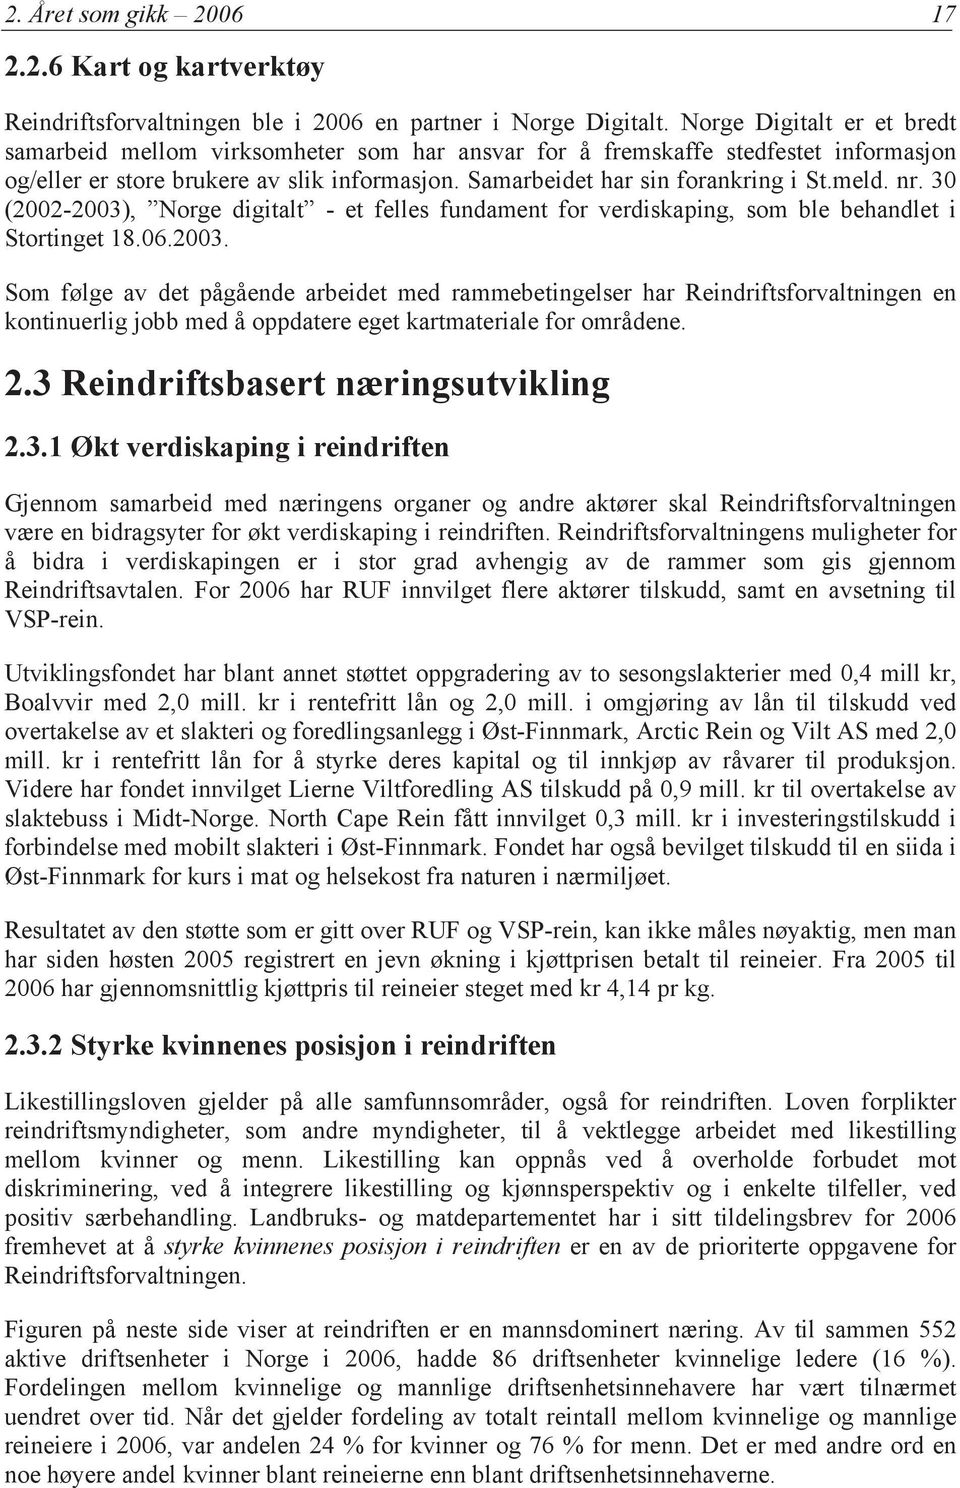 nr. 30 (2002-2003), Norge digitalt - et felles fundament for verdiskaping, som ble behandlet i Stortinget 18.06.2003. Som følge av det pågående arbeidet med rammebetingelser har Reindriftsforvaltningen en kontinuerlig jobb med å oppdatere eget kartmateriale for områdene.